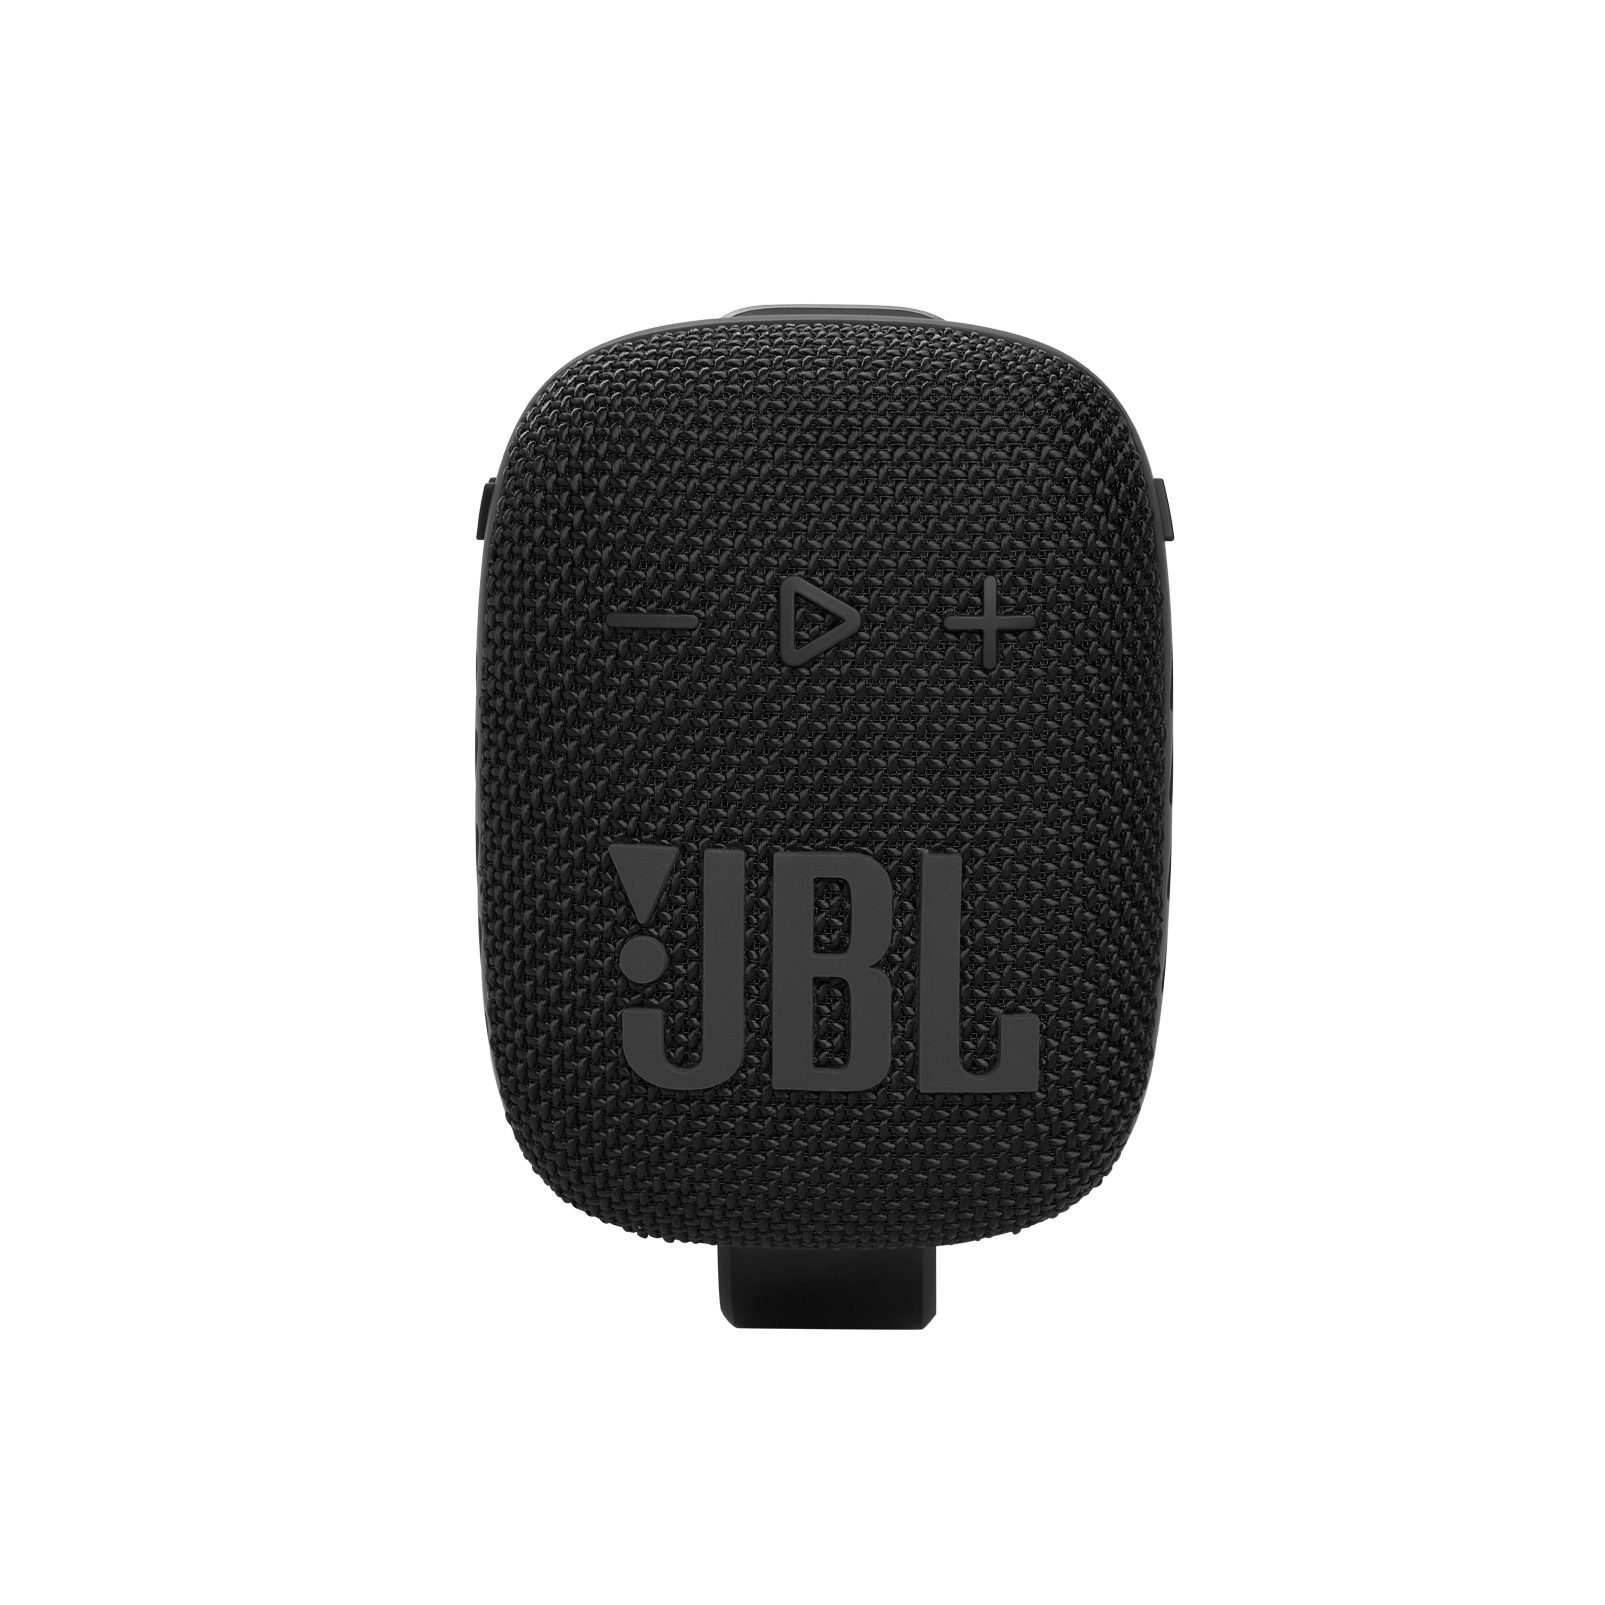 JBL Tragbarer Clip Wind3S mit Lautsprecher Bluetooth Fahrrad Bluetooth-Lautsprecher Mini